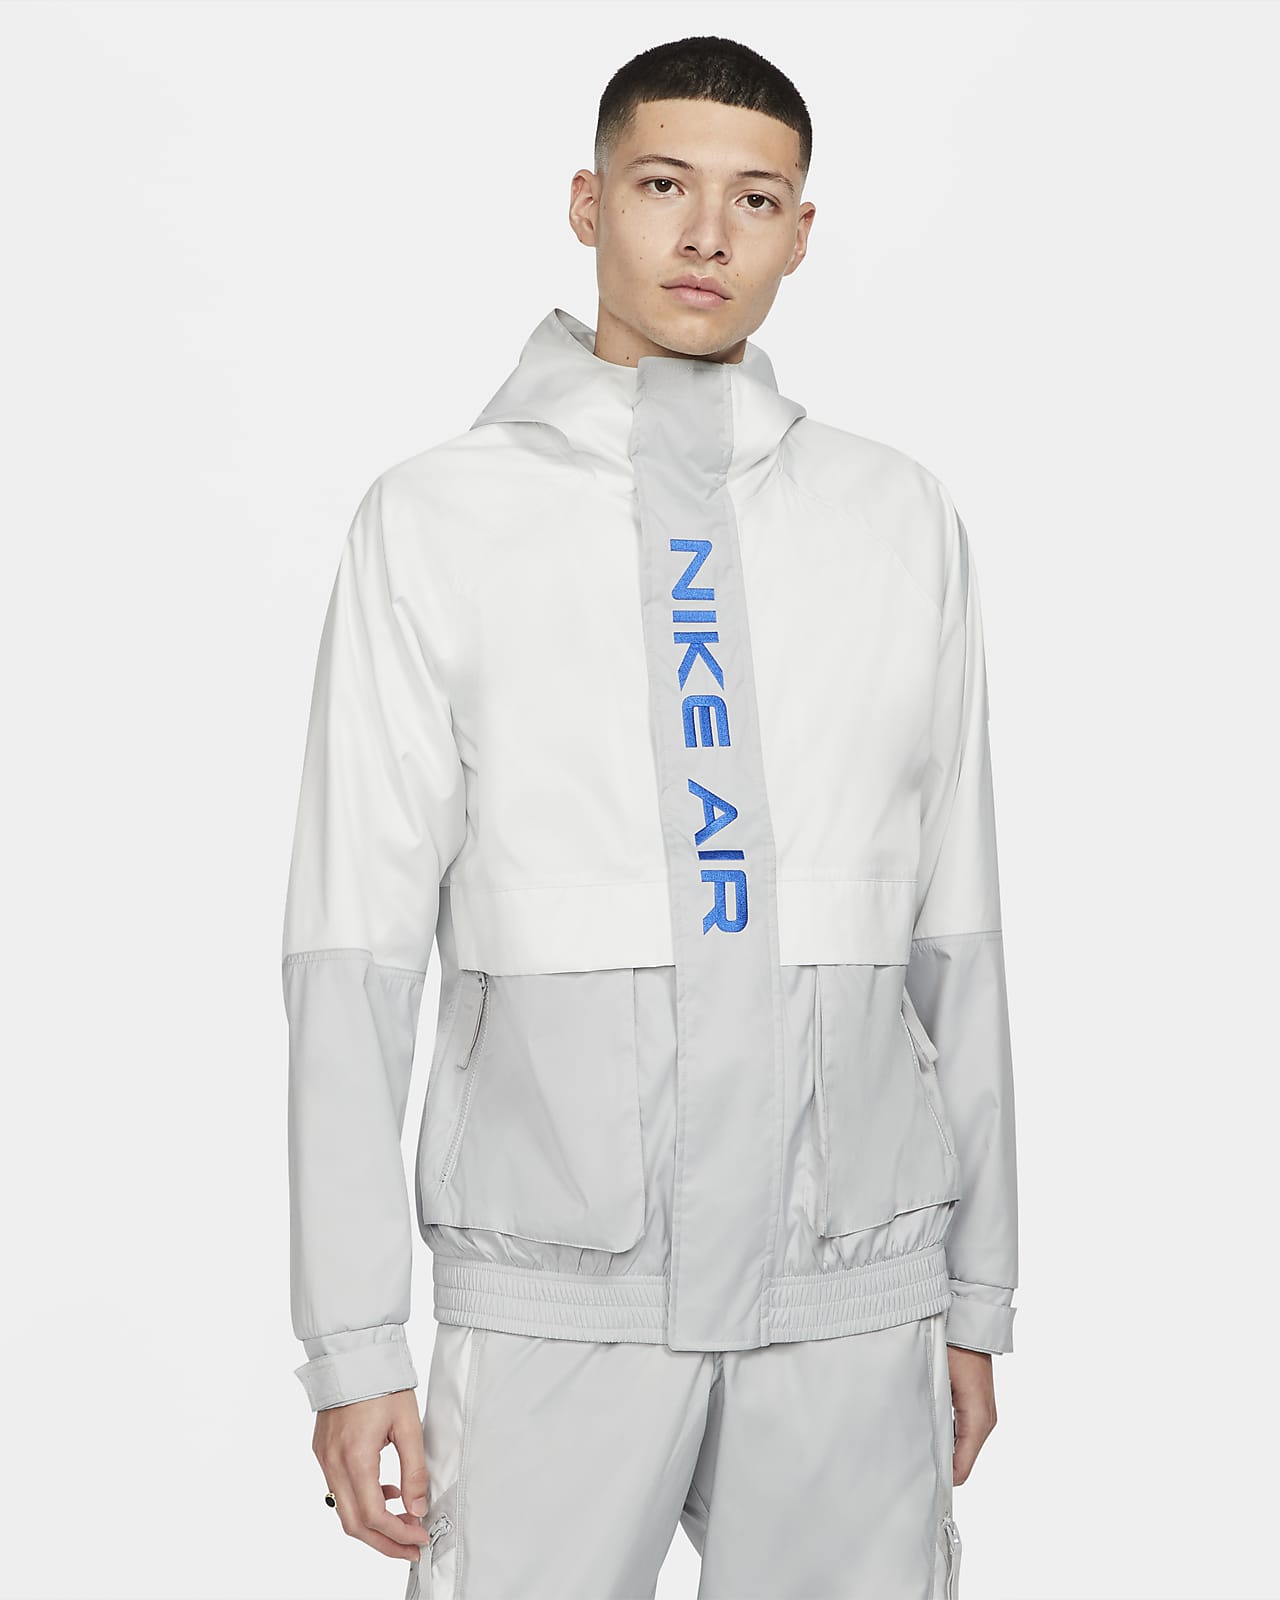 Nike Air Men's Hooded Lined Jacket. Nike LU